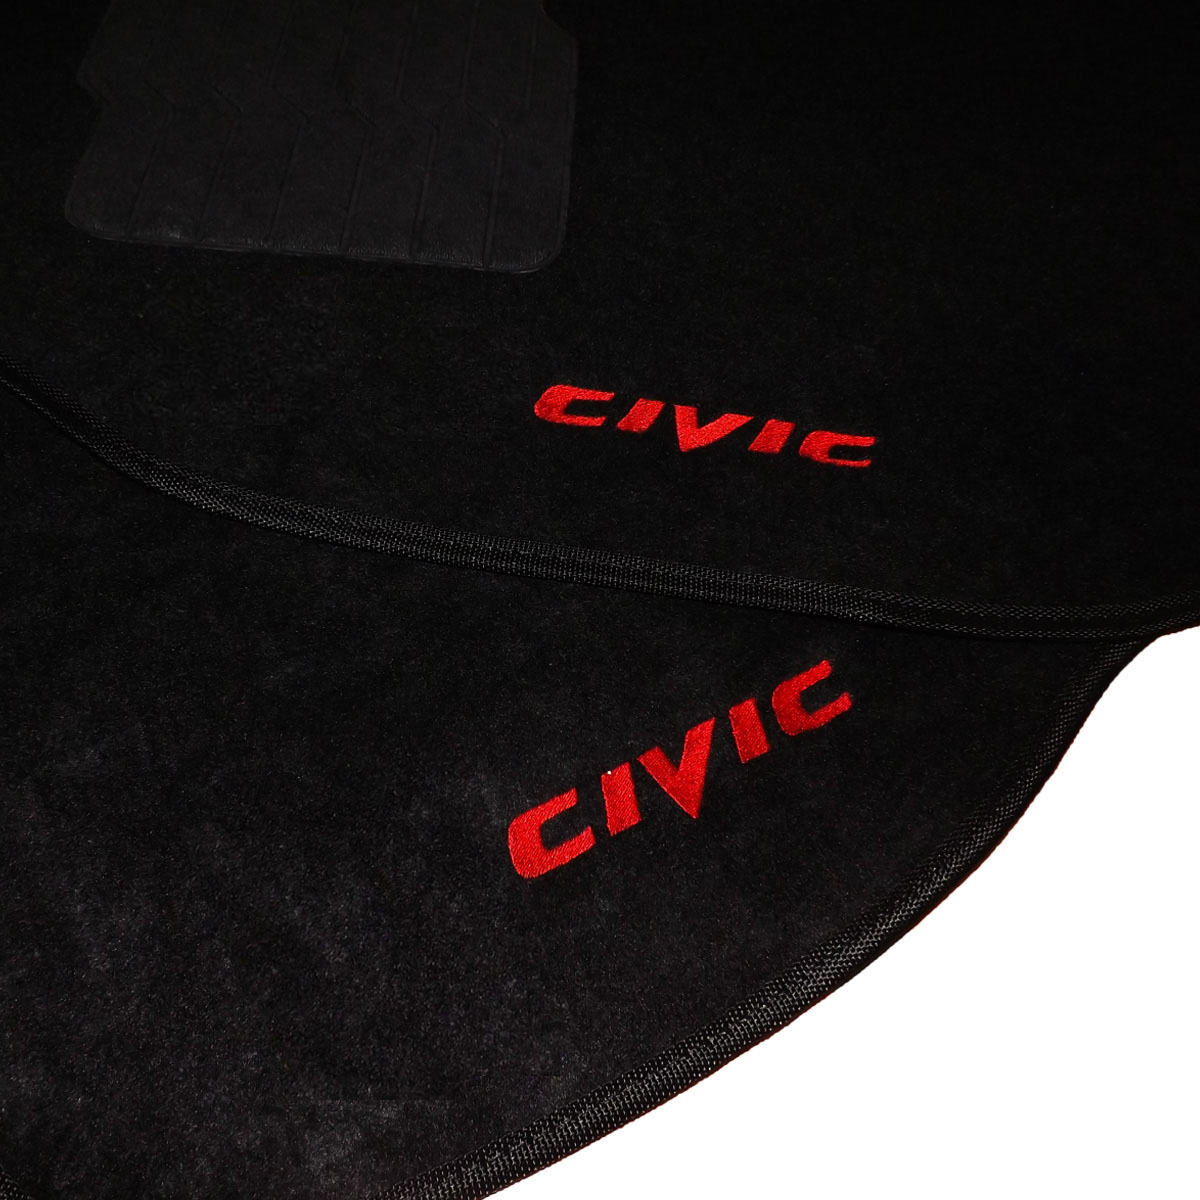 Tapete Carpete Personalizado com Escrita Bordada Civic 1997 Até 2000